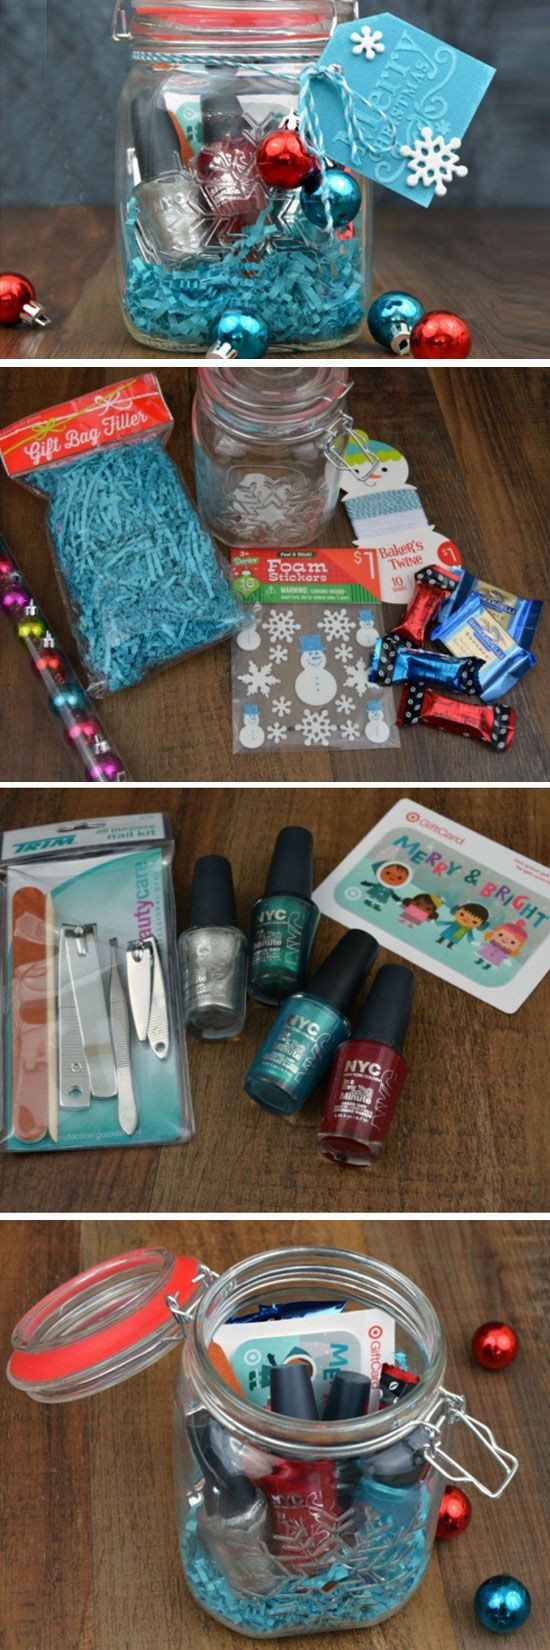 DIY Christmas Gifts For Teenagers
 25 DIY Christmas Gift Basket Ideas 2017